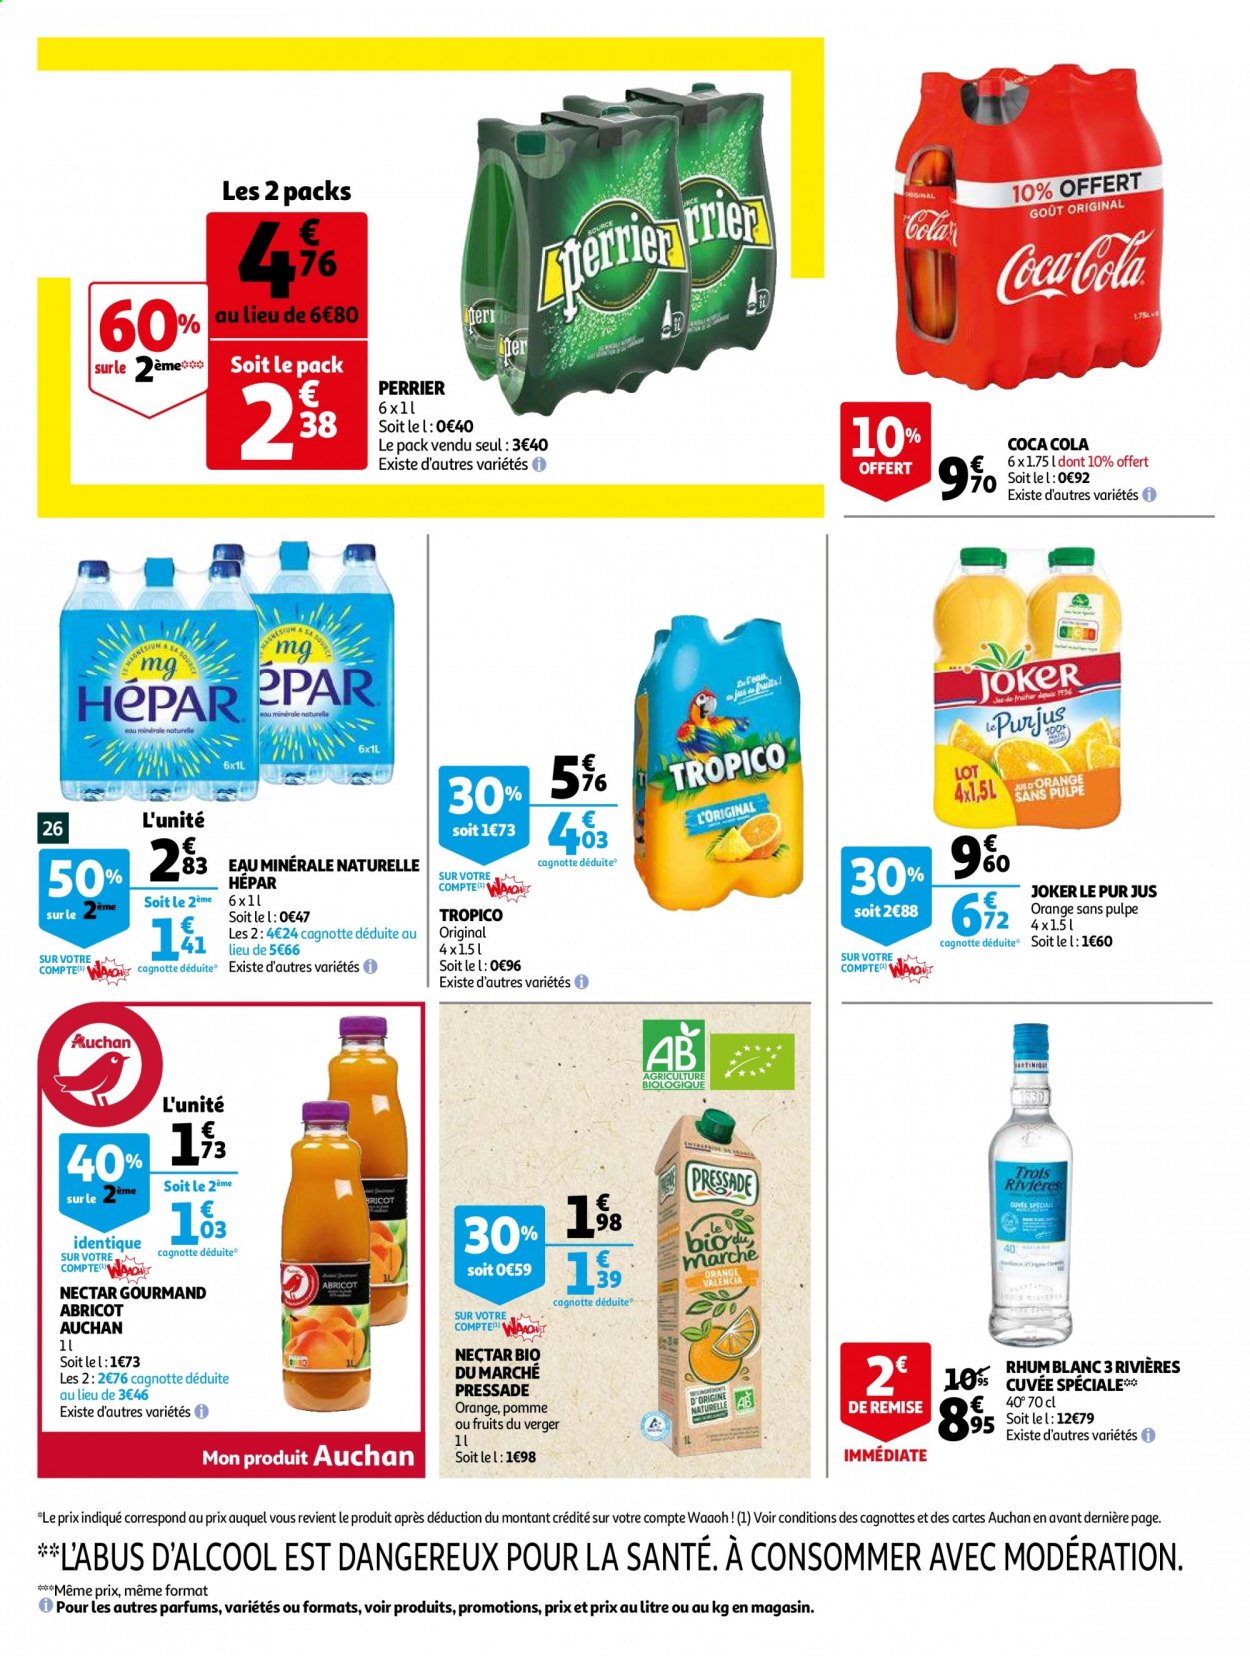 thumbnail - Catalogue Auchan - 06/04/2021 - 13/04/2021 - Produits soldés - jus, Coca-Cola, Joker, jus d'orange, nectar, pur jus, eau minérale, eau minérale naturelle, Perrier, Hépar, rhum, rhum blanc. Page 27.